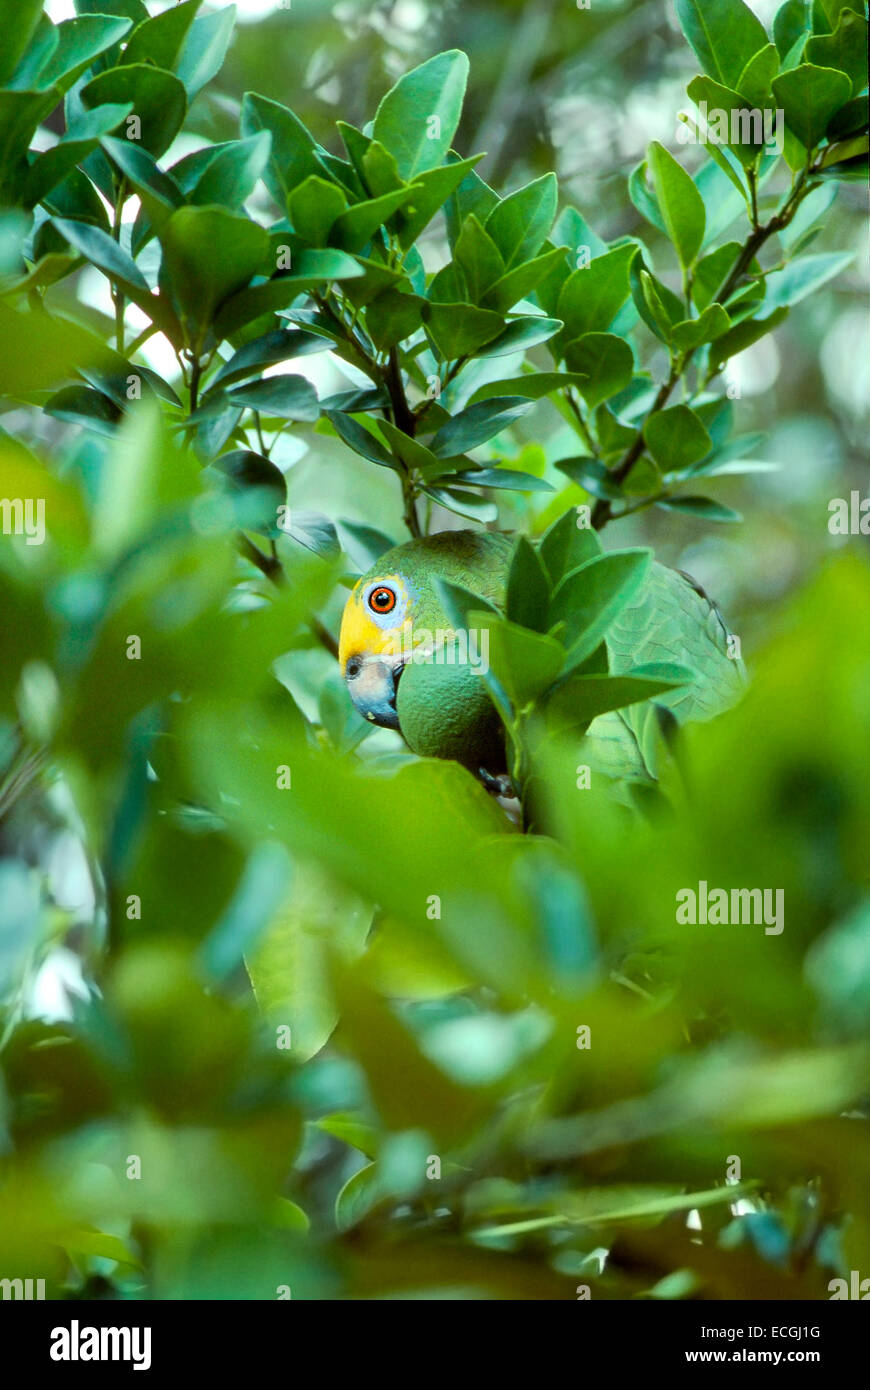 Mimicry- Yellow-Crowned Amazon (Amazona ochrocephala) camouflaged among the leaves Stock Photo